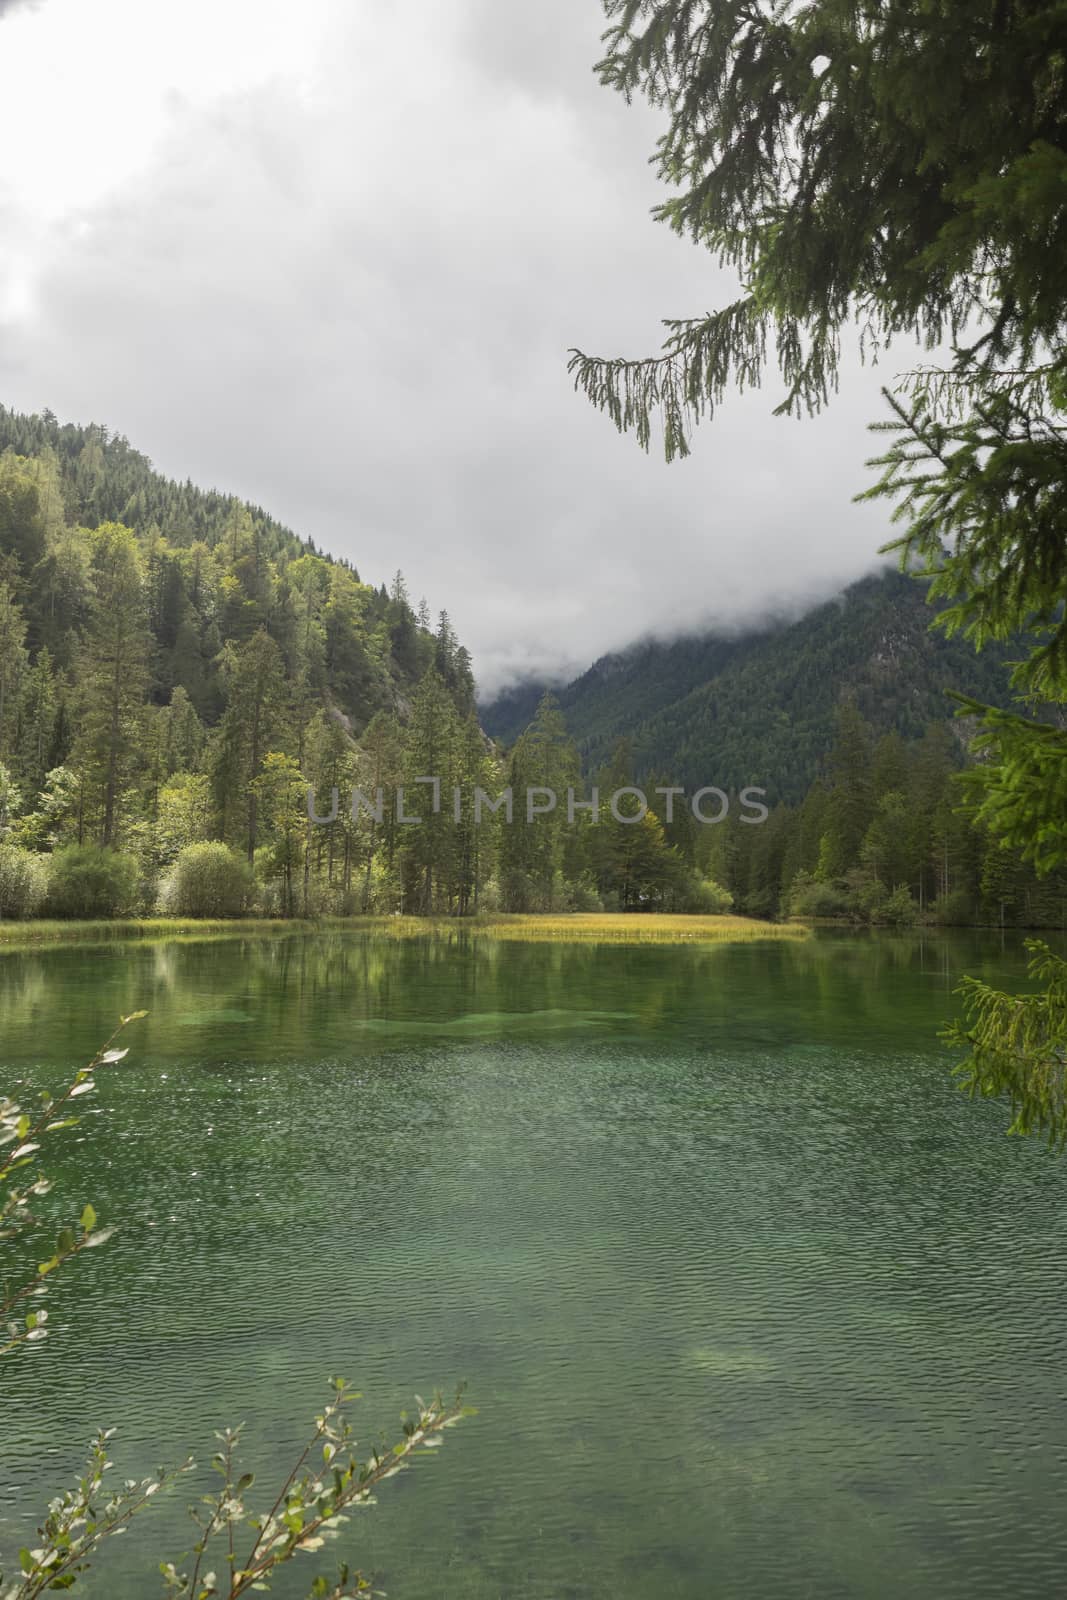 Schiederweiher, beautiful lake in Austria near Hinterstoder by sandra_fotodesign